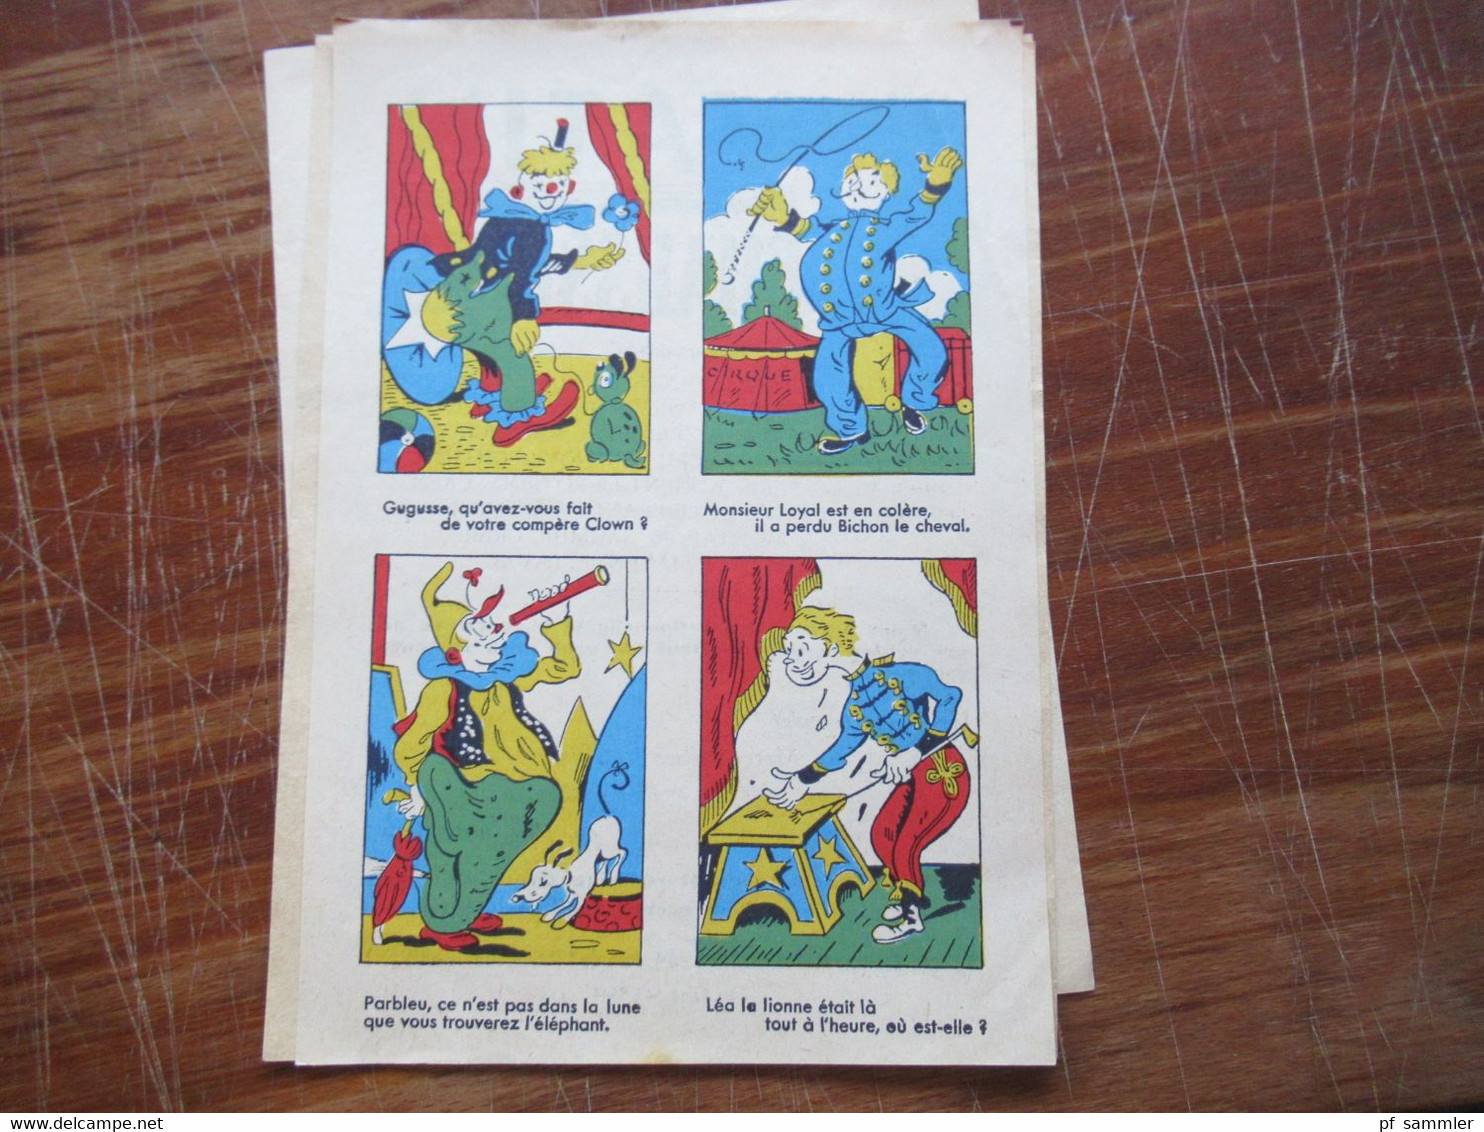 Frankreich Devinettes Sammlung mit 23 Stück / verschiedene Motive ca. 1940 / 50er jahre